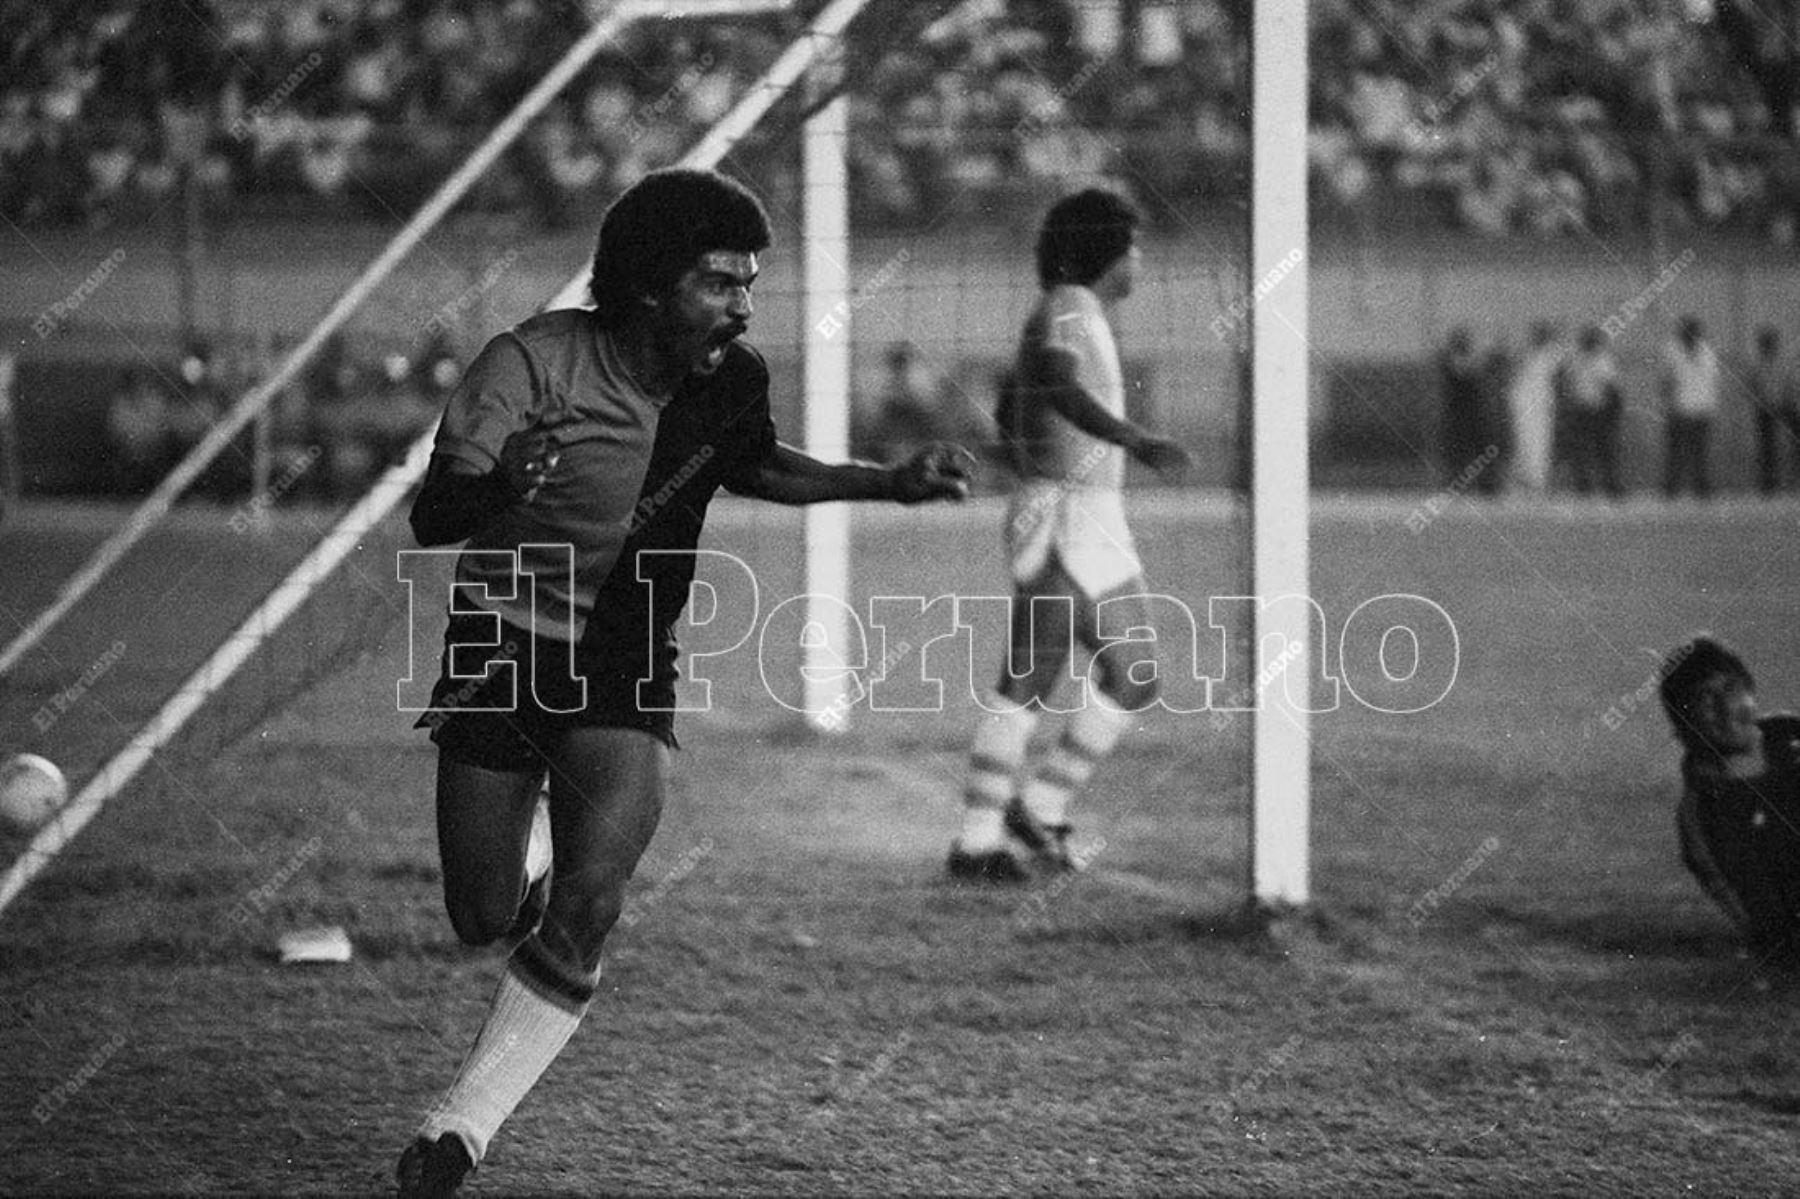 Lima - 31 enero 1982 / FBC Melgar se coronó campeón del fútbol peruano 1981 al empatar 1-1 con Sporting Cristal. Genaro Neyra anotó el gol del cuadro arequipeño. Foto: Archivo Histórico de El Peruano / Norman Córdova